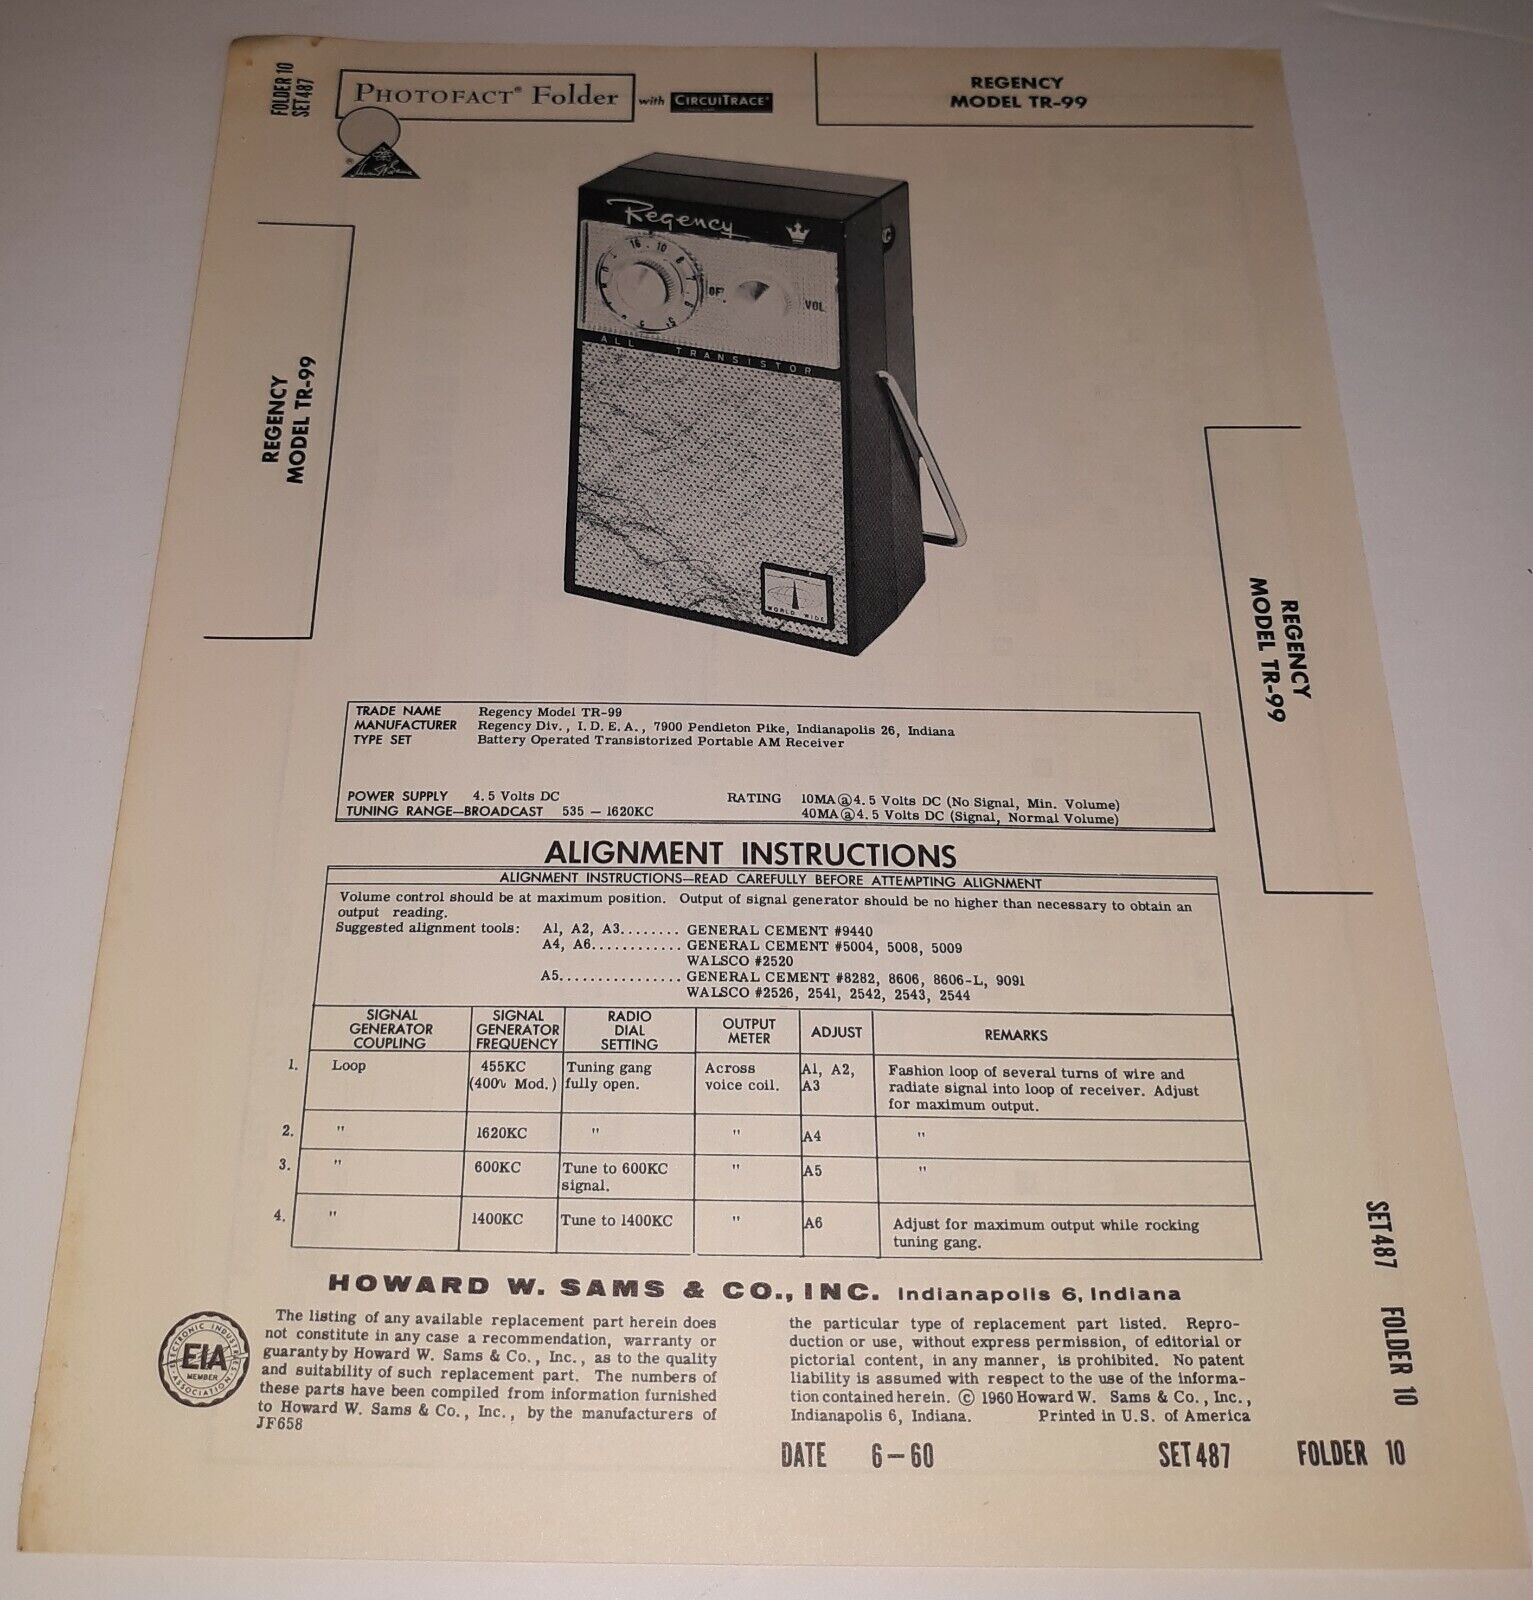 Regency Model TR-99 Photofact Folder 